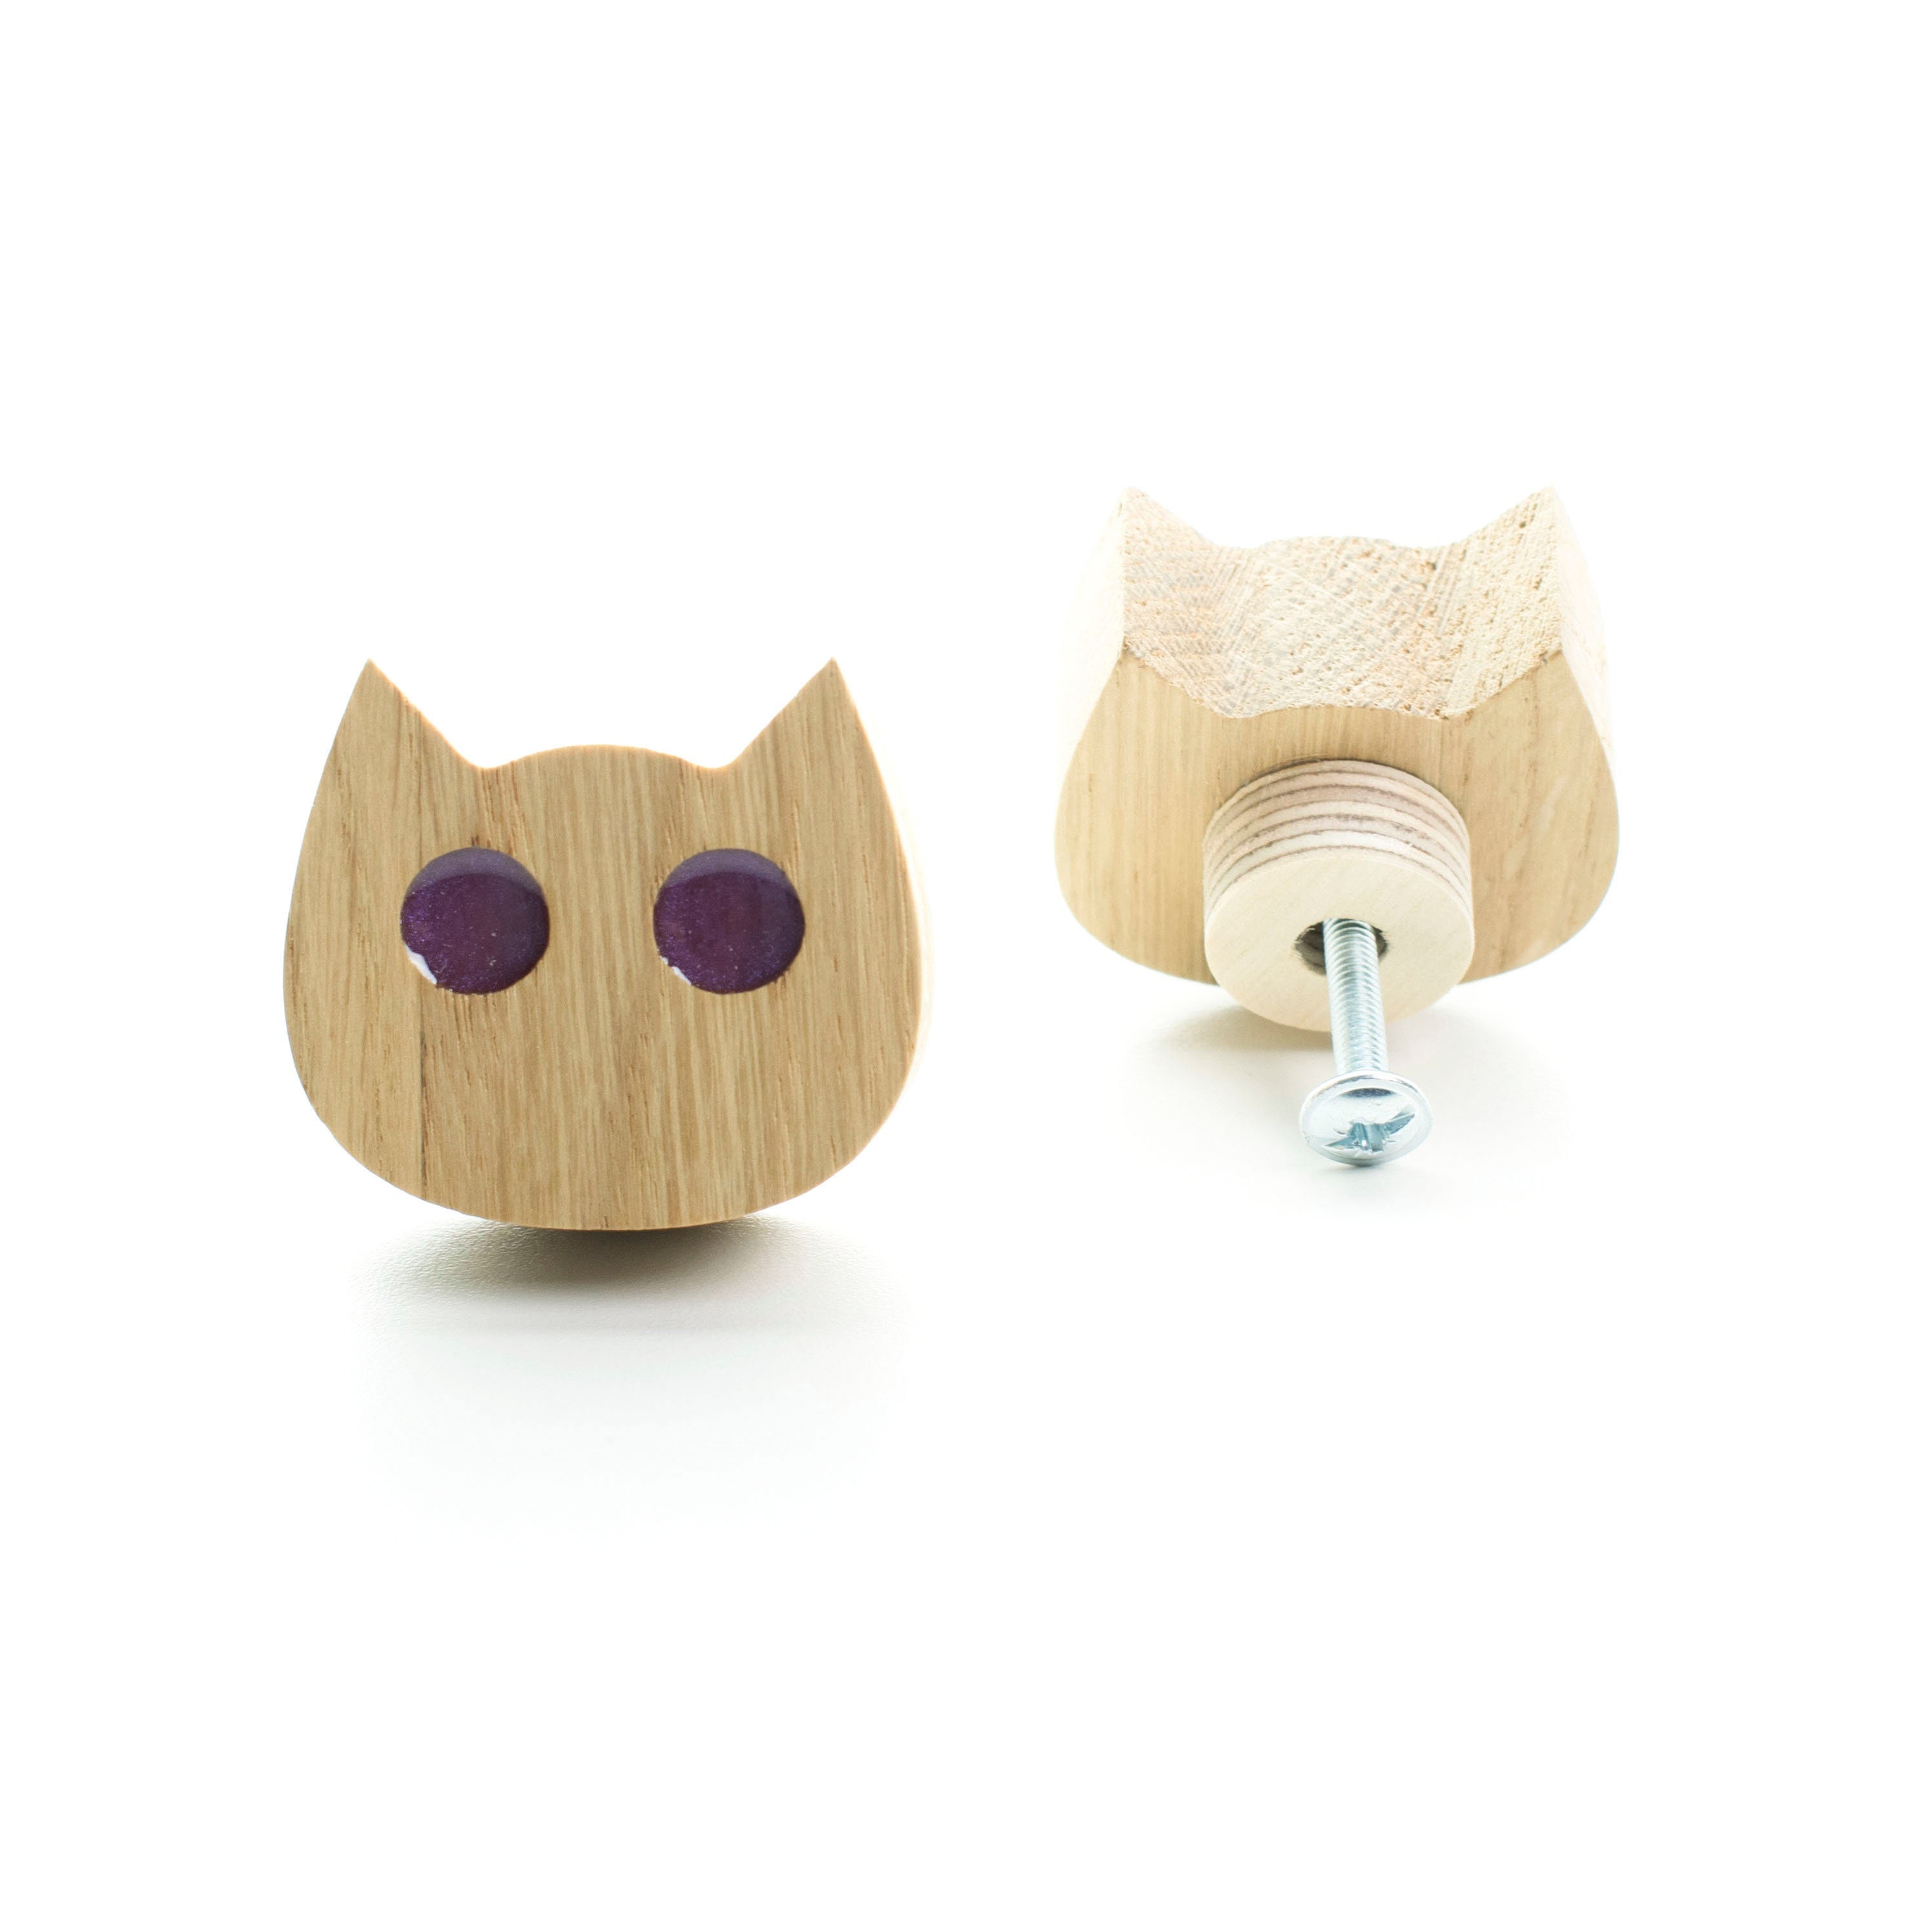 drawer knob kitty chat yeux violets bois de chêne avec résine époxy, bouton commode fleurs, mobilier design moderne, pour enfants, tiroir